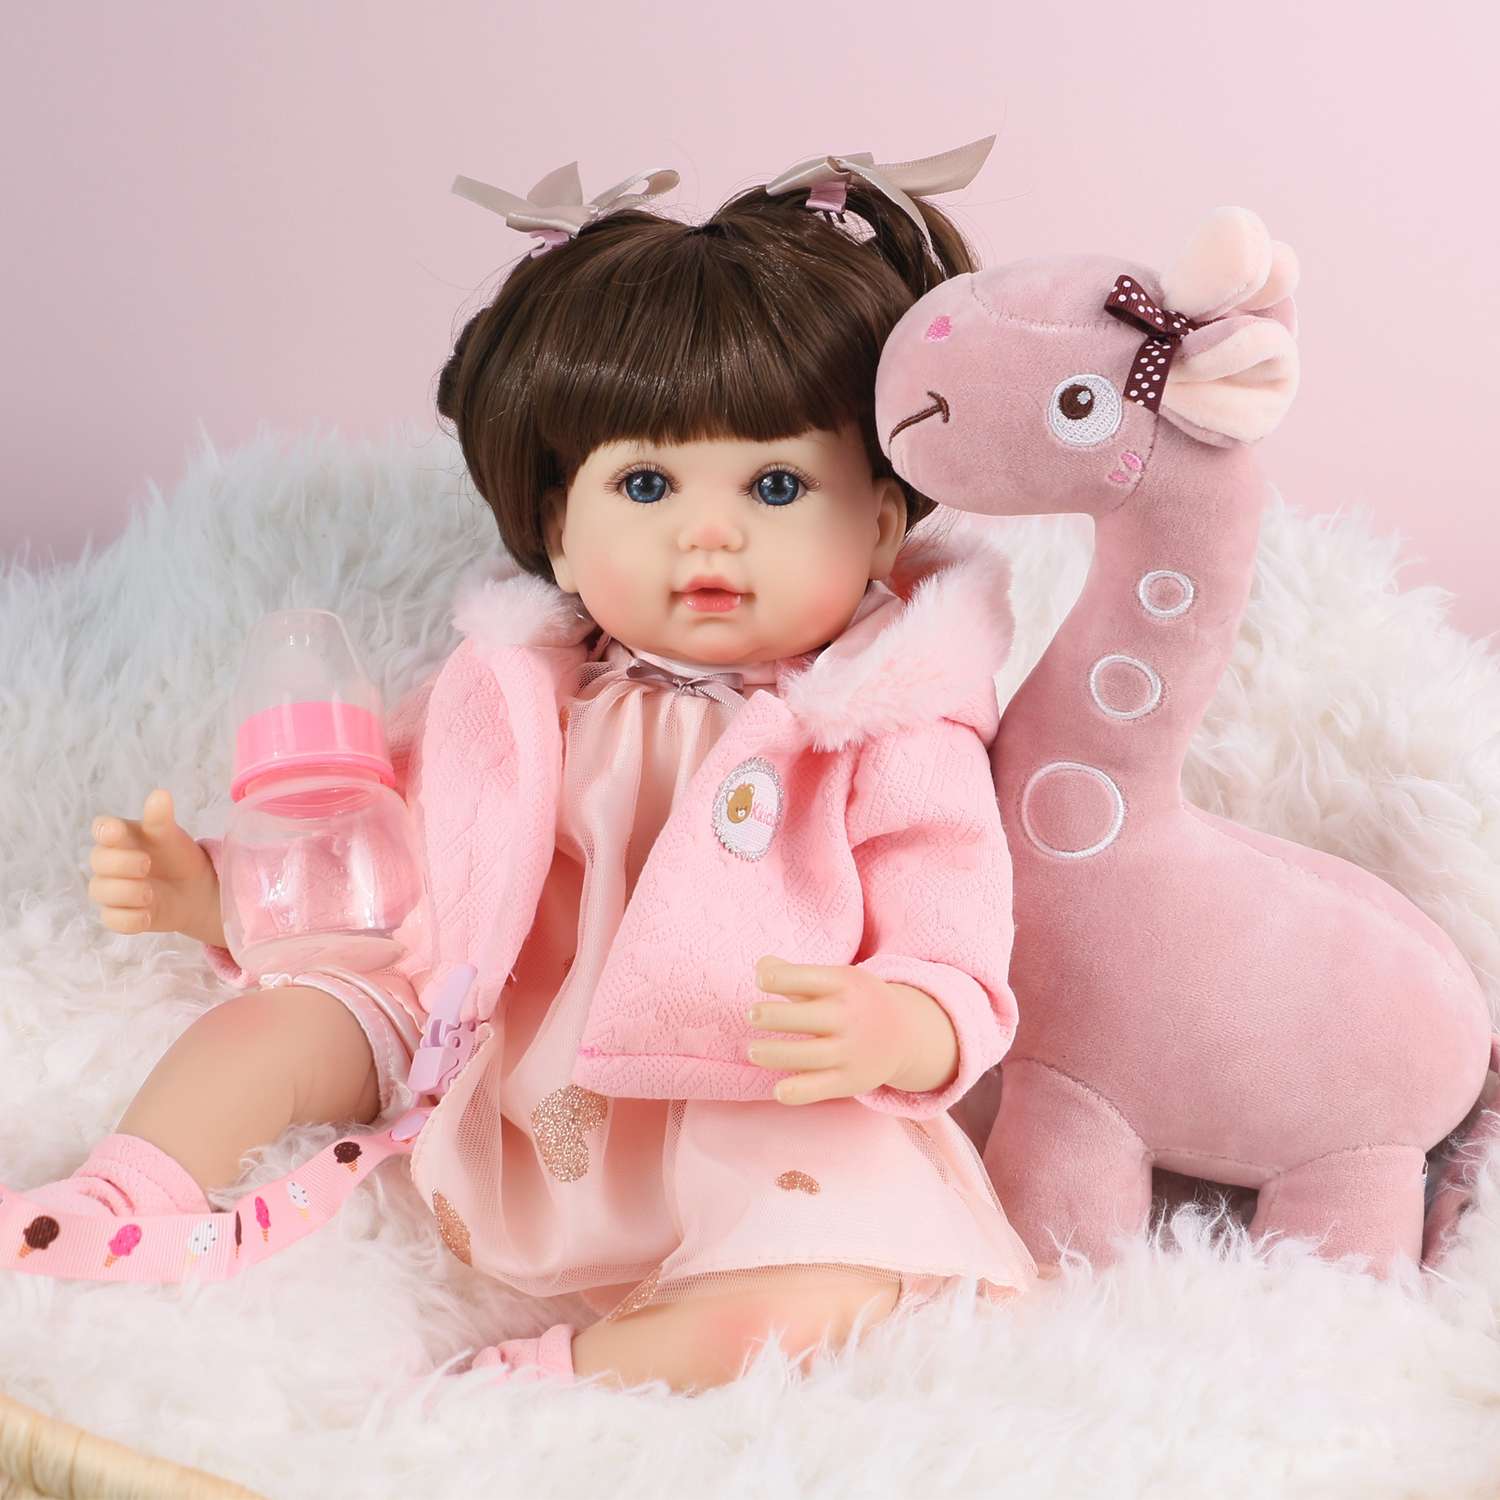 Кукла Реборн QA BABY Ирина девочка большая пупс набор игрушки для девочки 42 см 45007 - фото 1